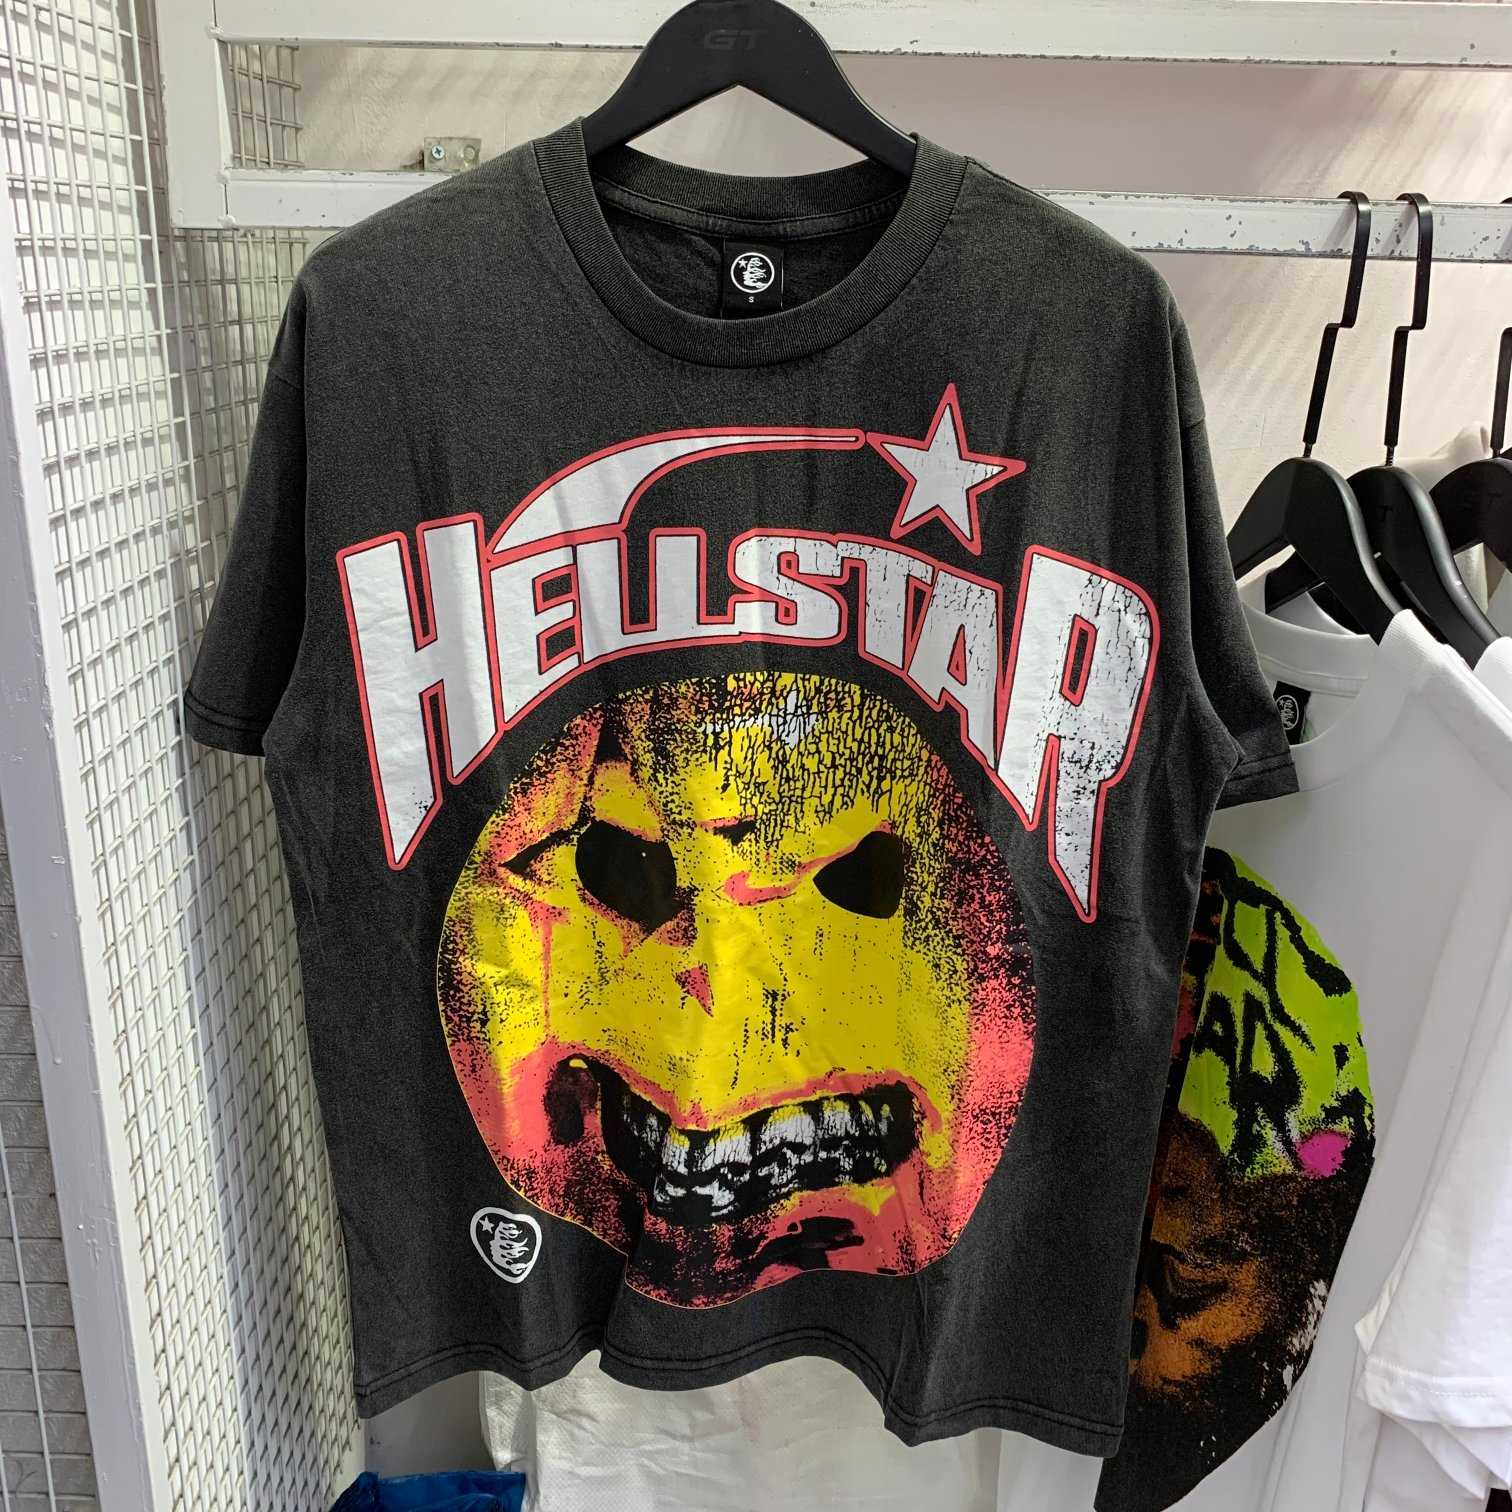 Hellstar Cotton T-Shirt - everydesigner